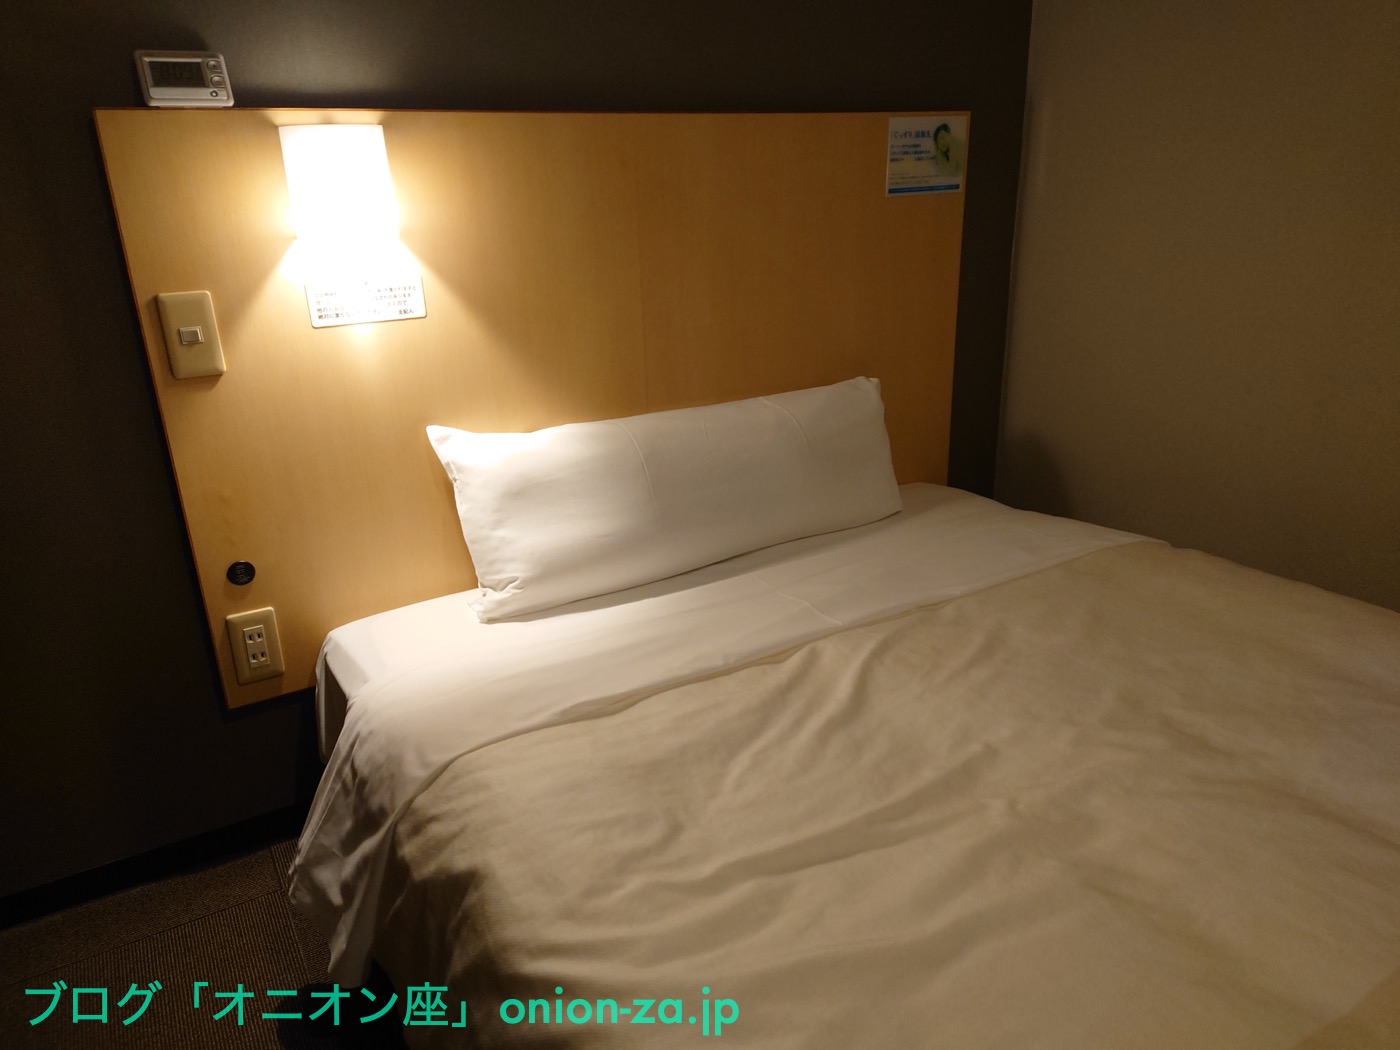 某県のスーパーホテルのベッド。高級なシモンズ社製で、寝心地がすこぶるいい。